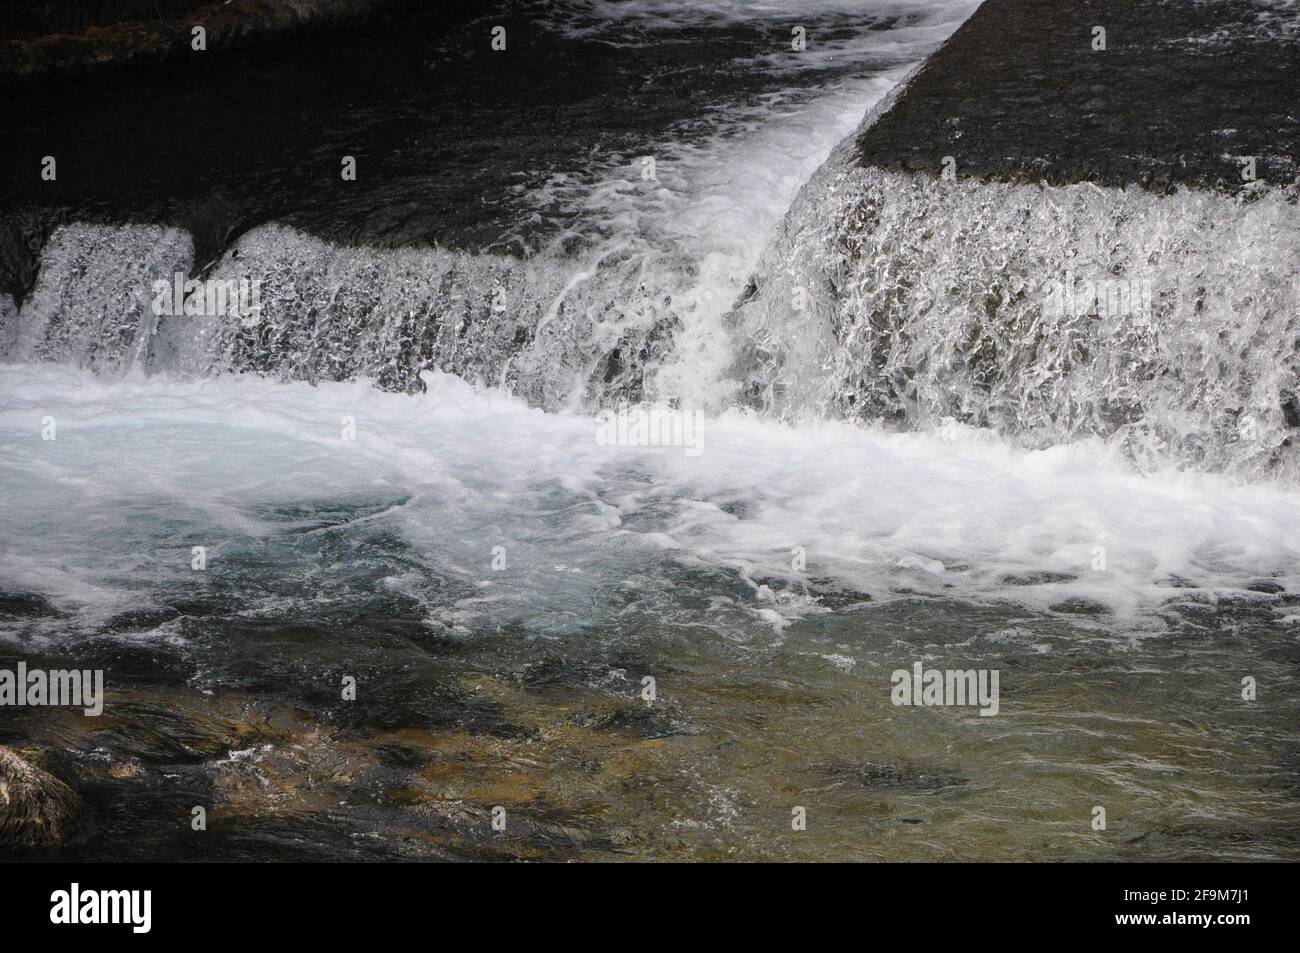 Fluss und Flussbett von Rječina, in der Nähe der Stadt Rijeka, in Kroatien. Wasserfall, kaltes klares Wasser in der Nähe der Quelle. Wird Aktualisiert Stockfoto